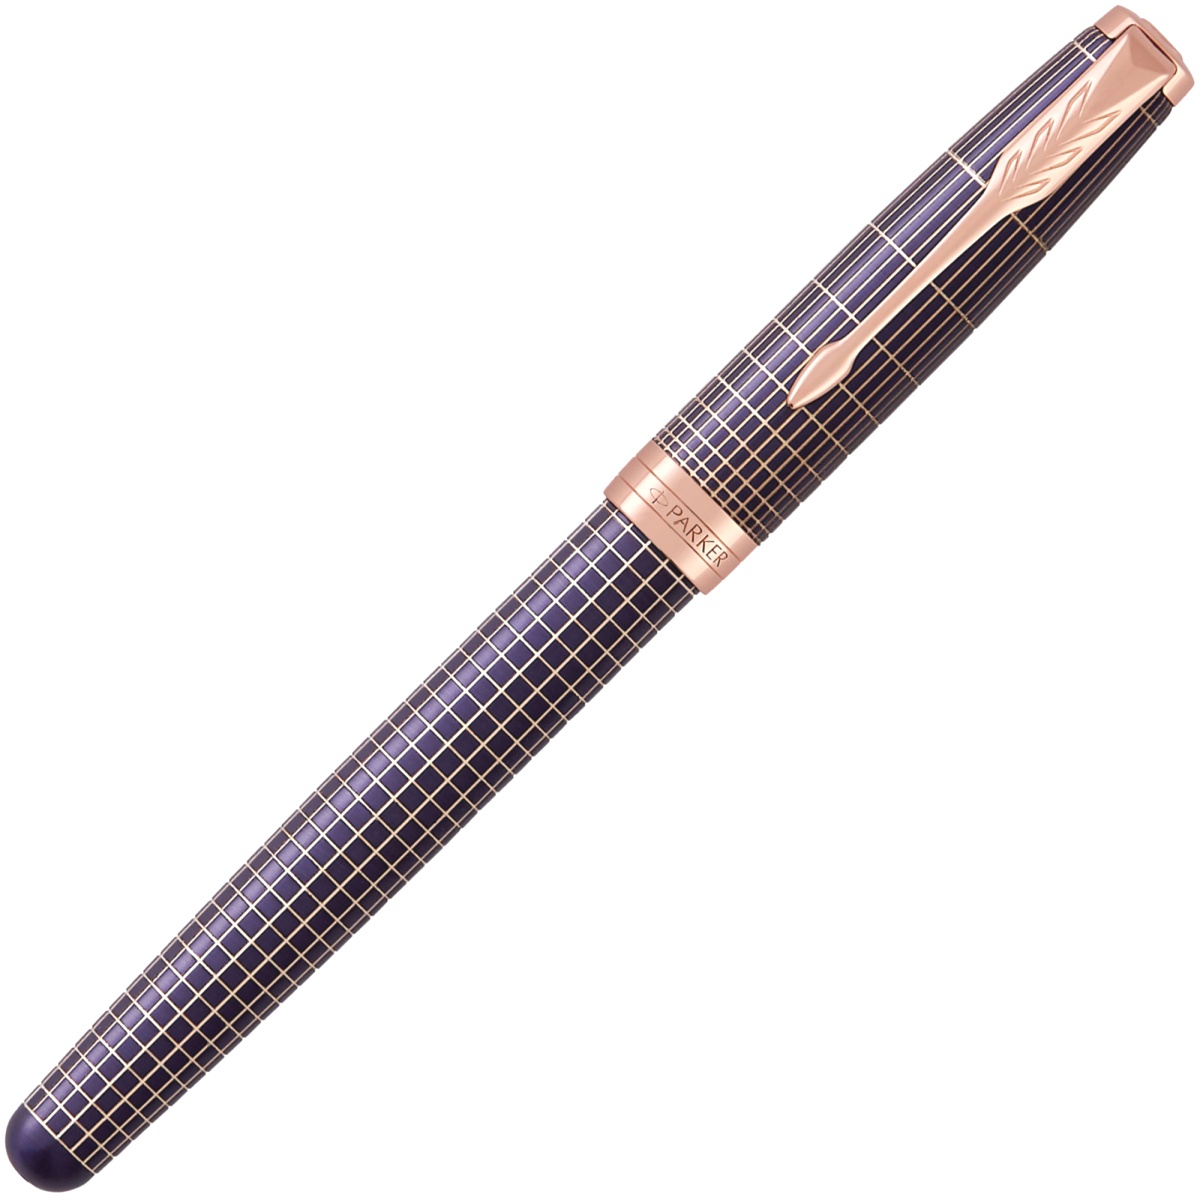  Ручка-роллер Parker Sonnet Core, Purple Matriz Cisele GT, фото 2